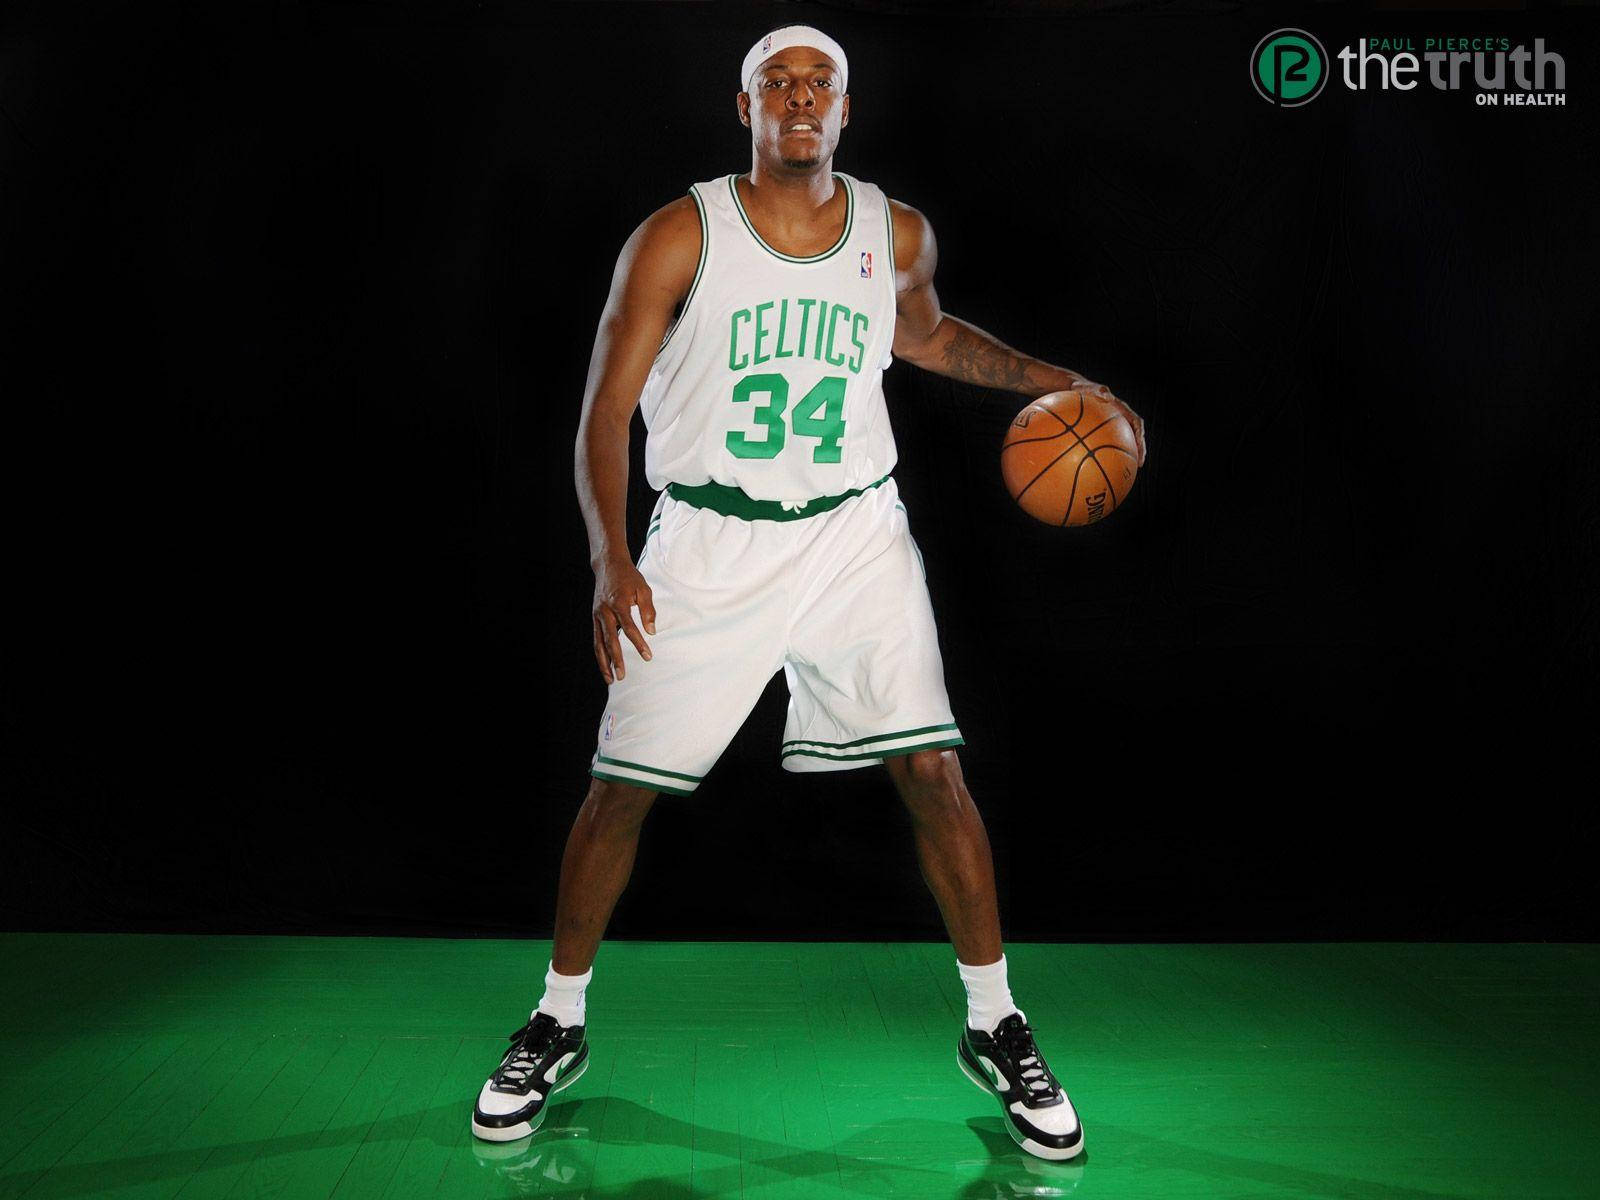 Paul Pierce On Green Basketball Court